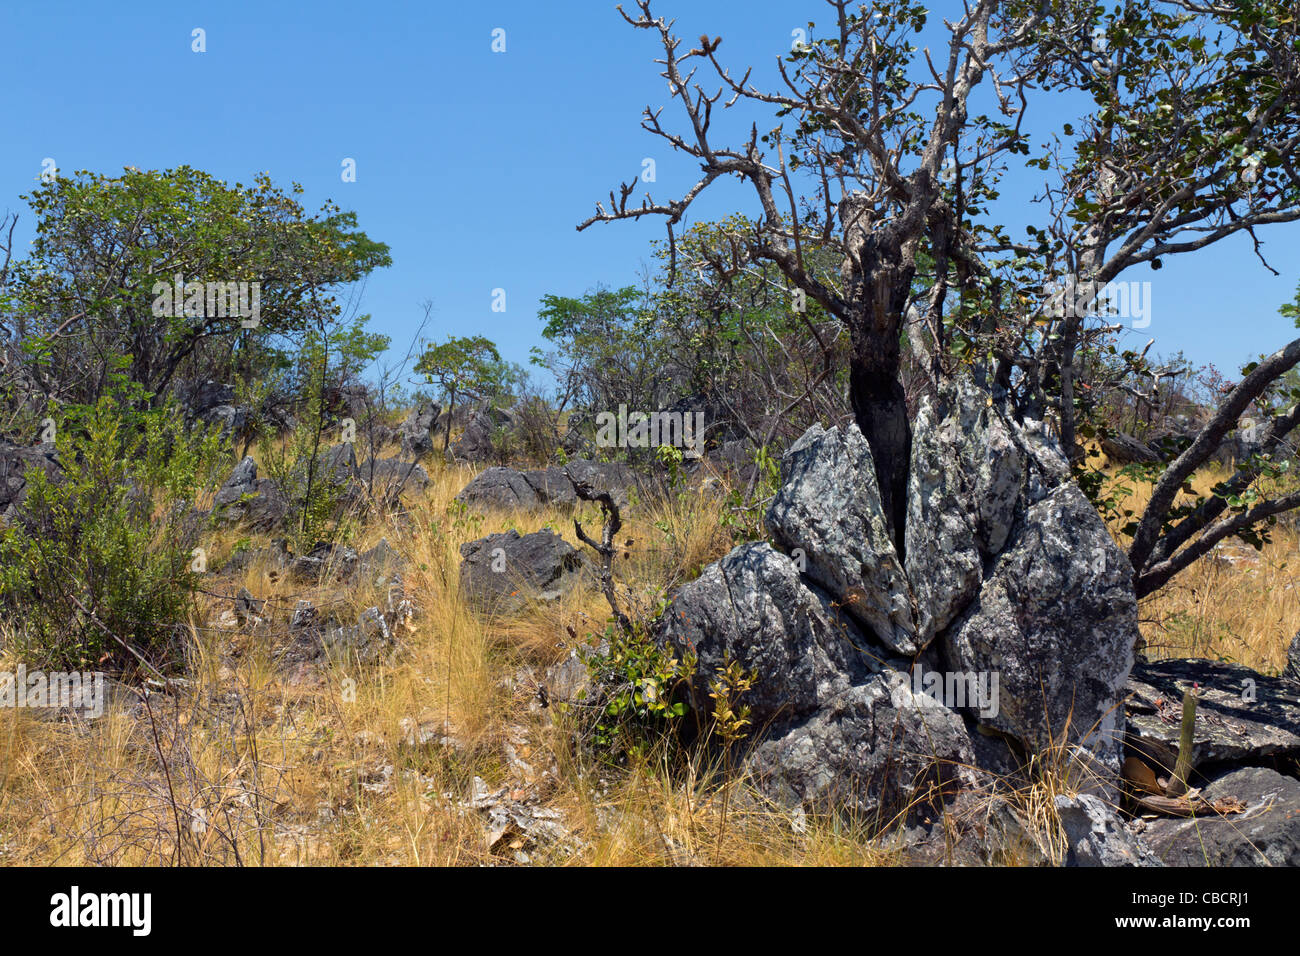 Bioma de sabana llamado cerrado, Brasil Tierras Altas: Vegetación en afloramiento rocoso: Árbol es Wunderlichia crulsiana de la familia Asteraceae.El cerrado es un punto caliente de la biodiversidad. Foto de stock